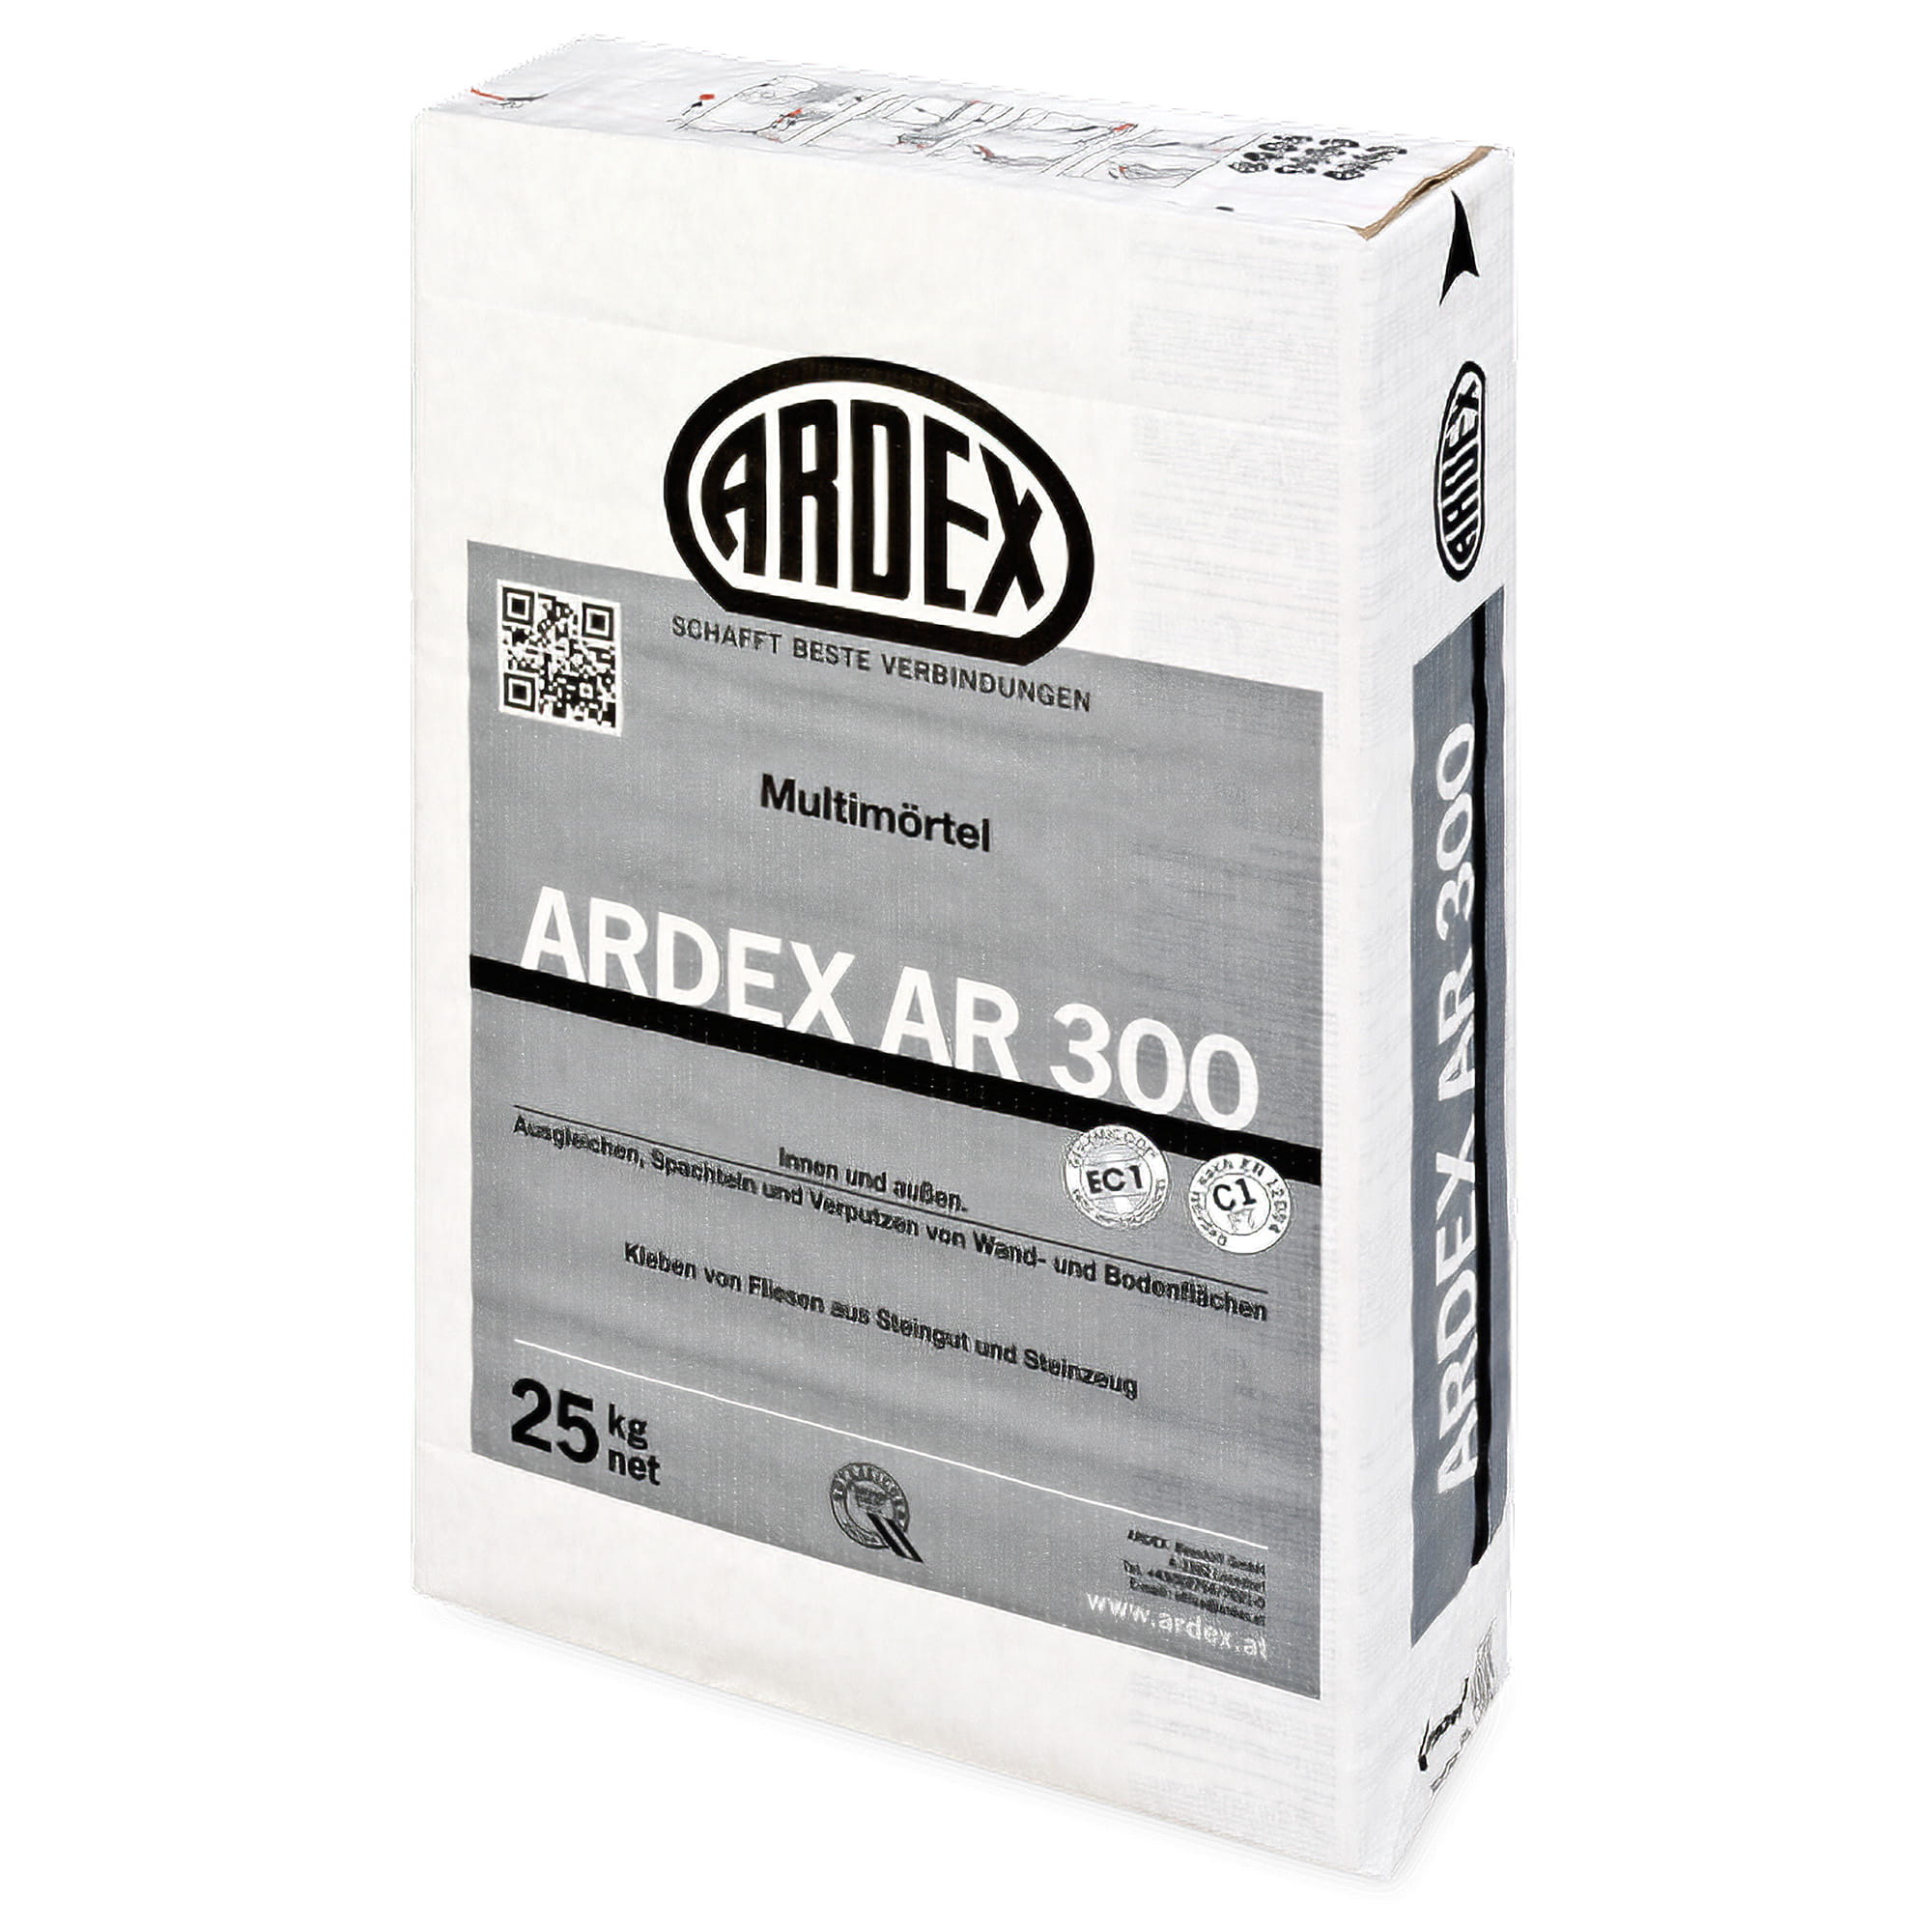 Az ARDEX AR 300 egy multifunkciós cementbázisú habarcs, mely kiválóan alkalmas ásványi építőlapok, gipszlapok és egyéb felületek felhelyezéséhez.